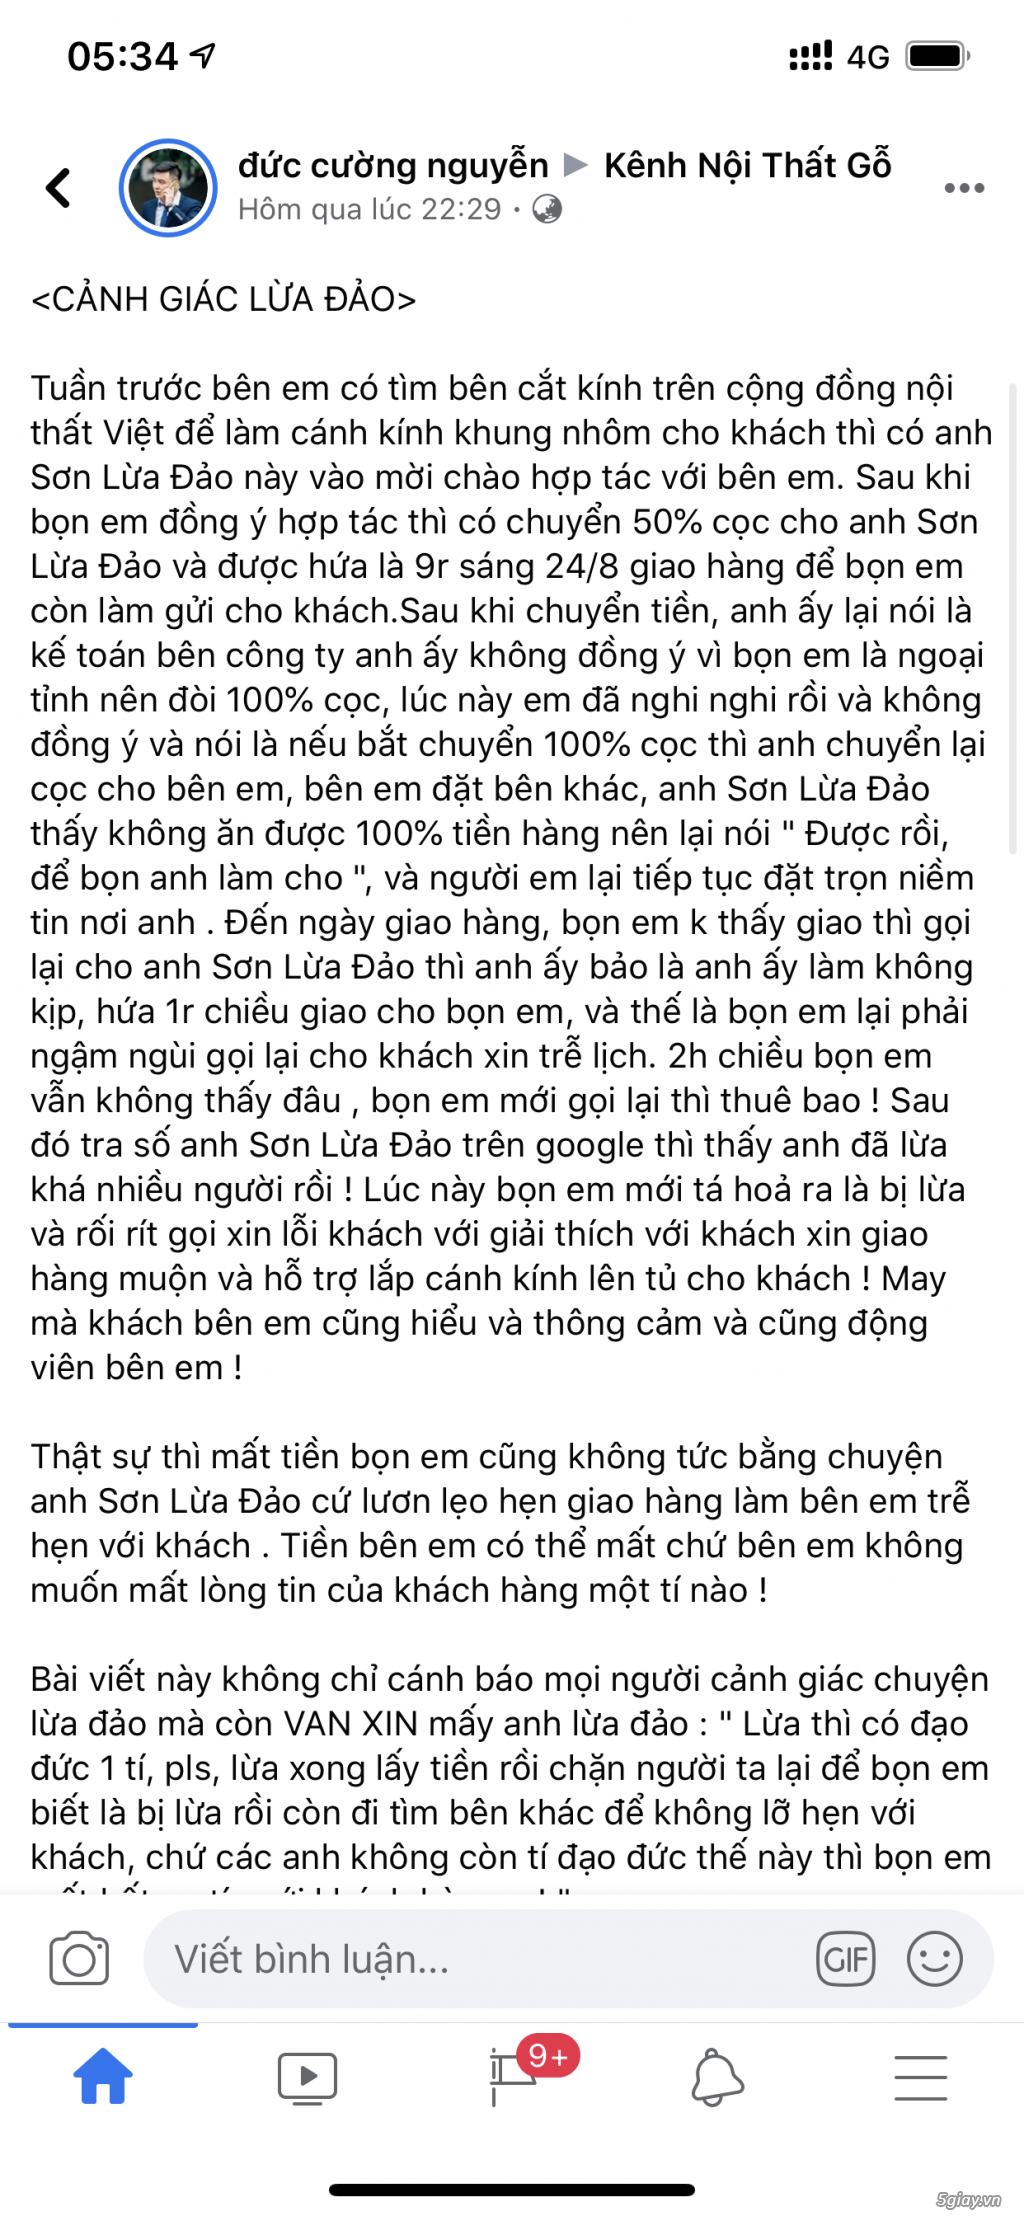 Cảnh báo lừa đảo khi mua đồ trên FB với tên Nguyễn Hữu Sơn